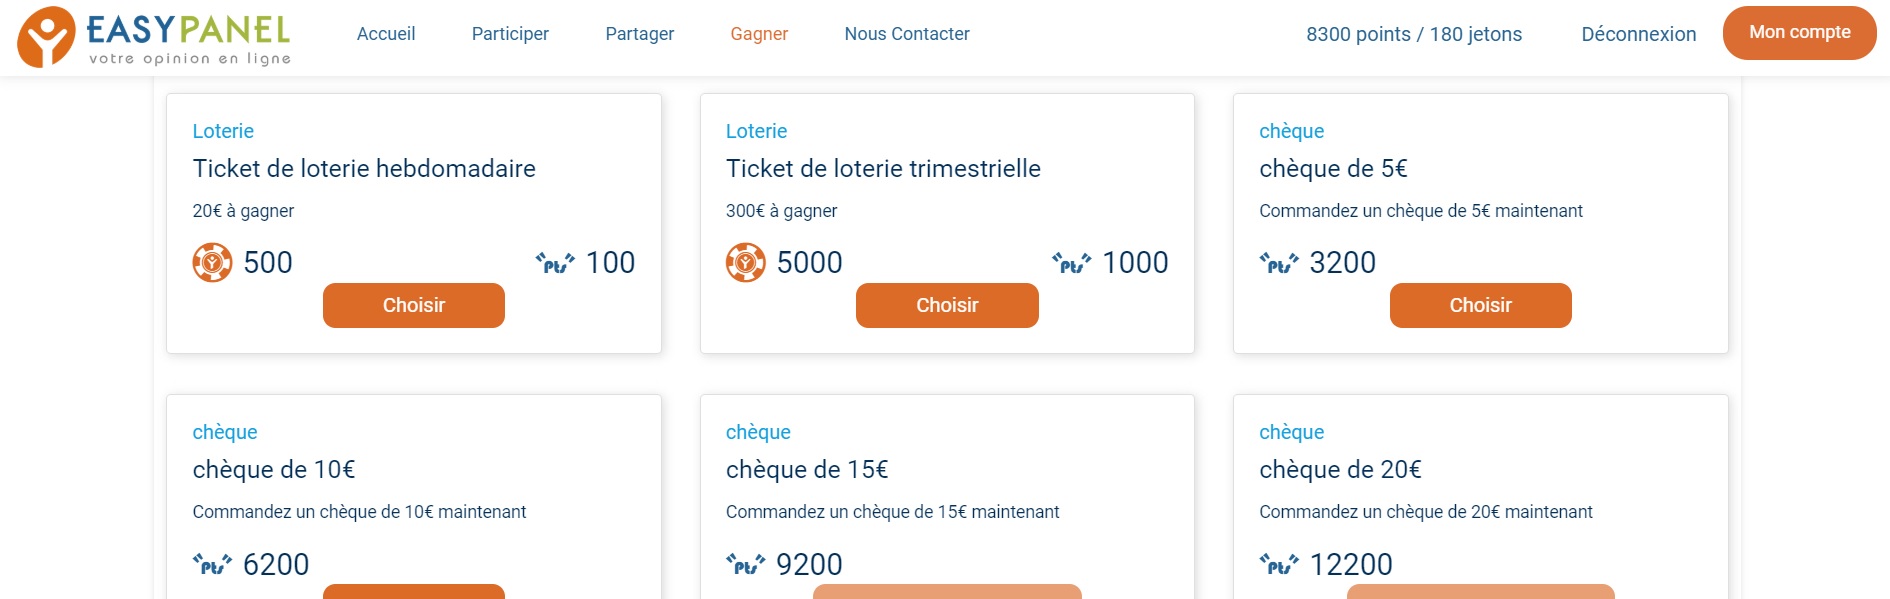 Les récompenses proposées sur EasyPanel.fr